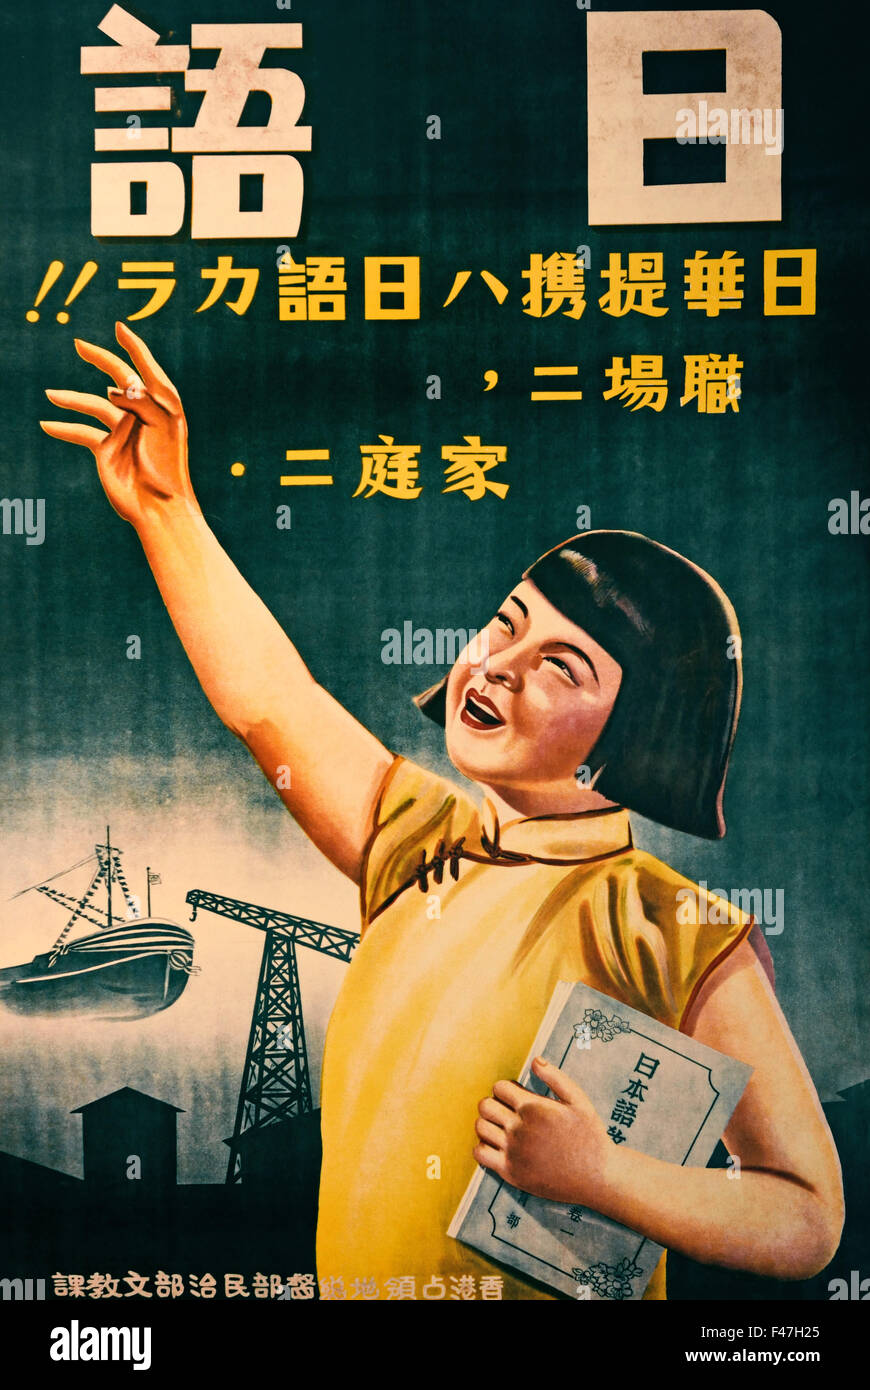 Fördern das Erlernen der japanischen Sprache (Second World War II 2. Hong Kong Chinese Chinesisch japanischen militärischen Konflikt der Volksrepublik China und dem Kaiserreich Japan 1937-1945) Museum der Geschichte Hong Kong chinesische China Plakat Stockfoto